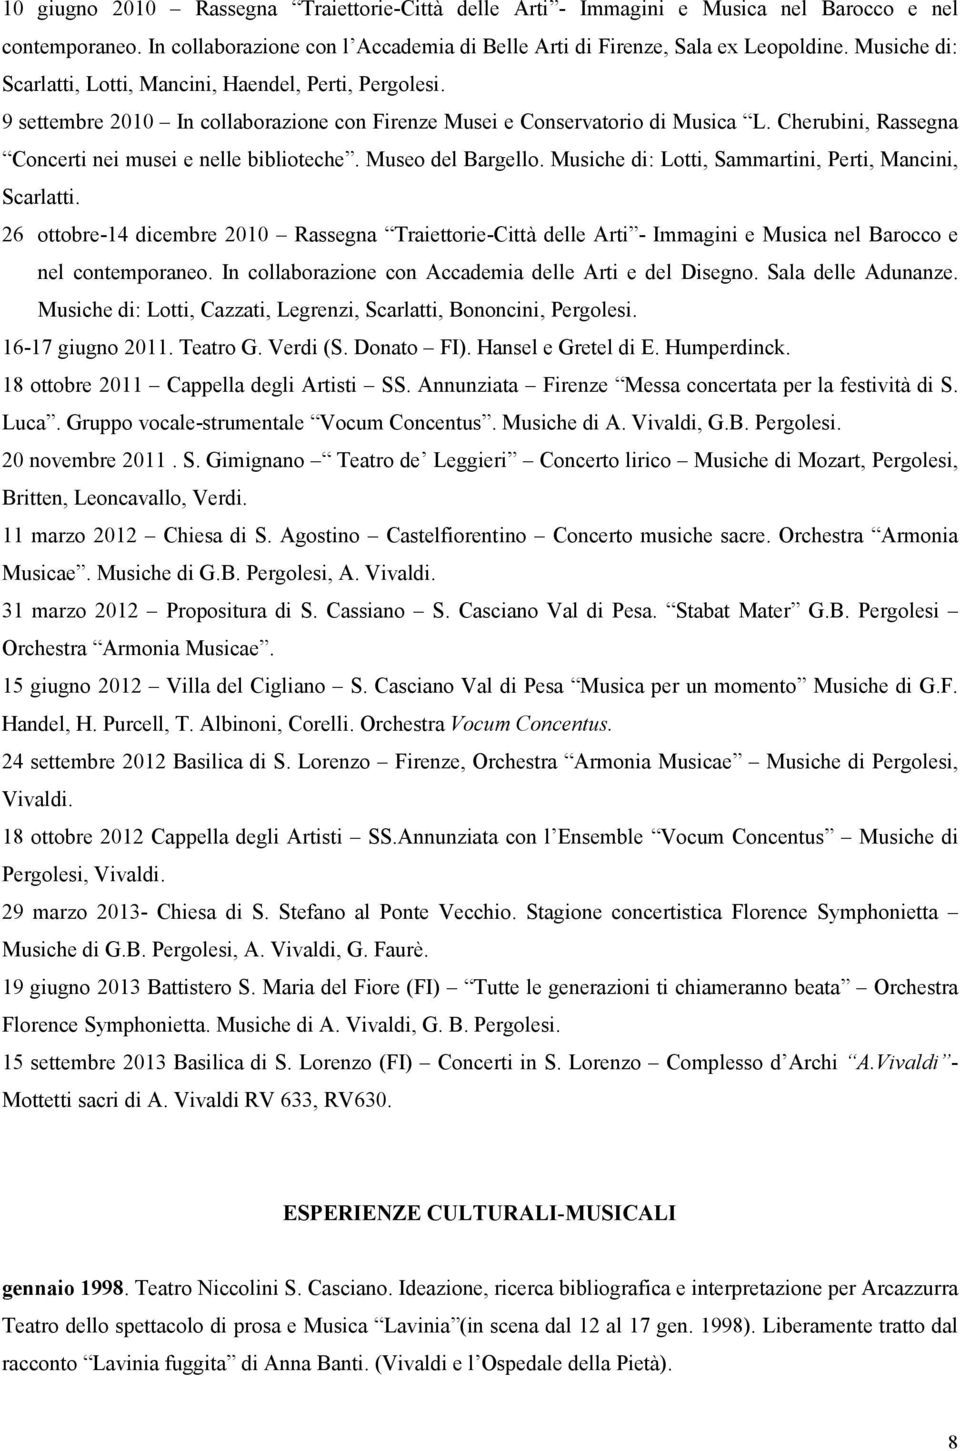 Cherubini, Rassegna Concerti nei musei e nelle biblioteche. Museo del Bargello. Musiche di: Lotti, Sammartini, Perti, Mancini, Scarlatti.